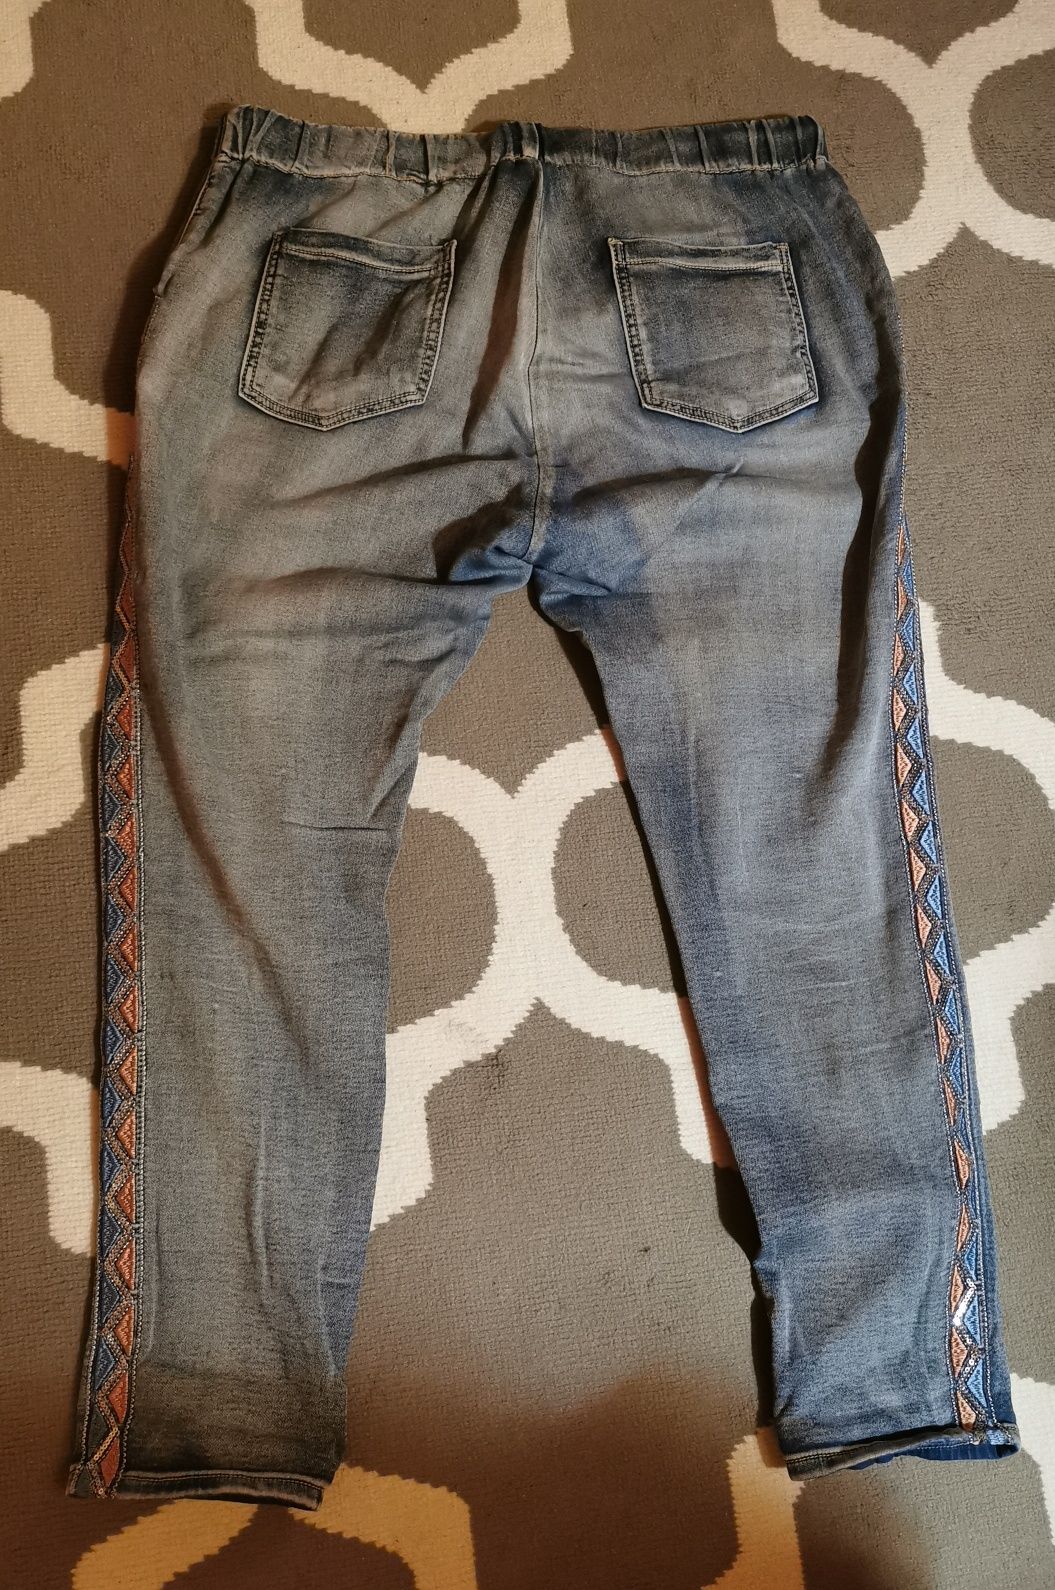 Spodnie rozciągliwe jeansowe xxl/xxxl